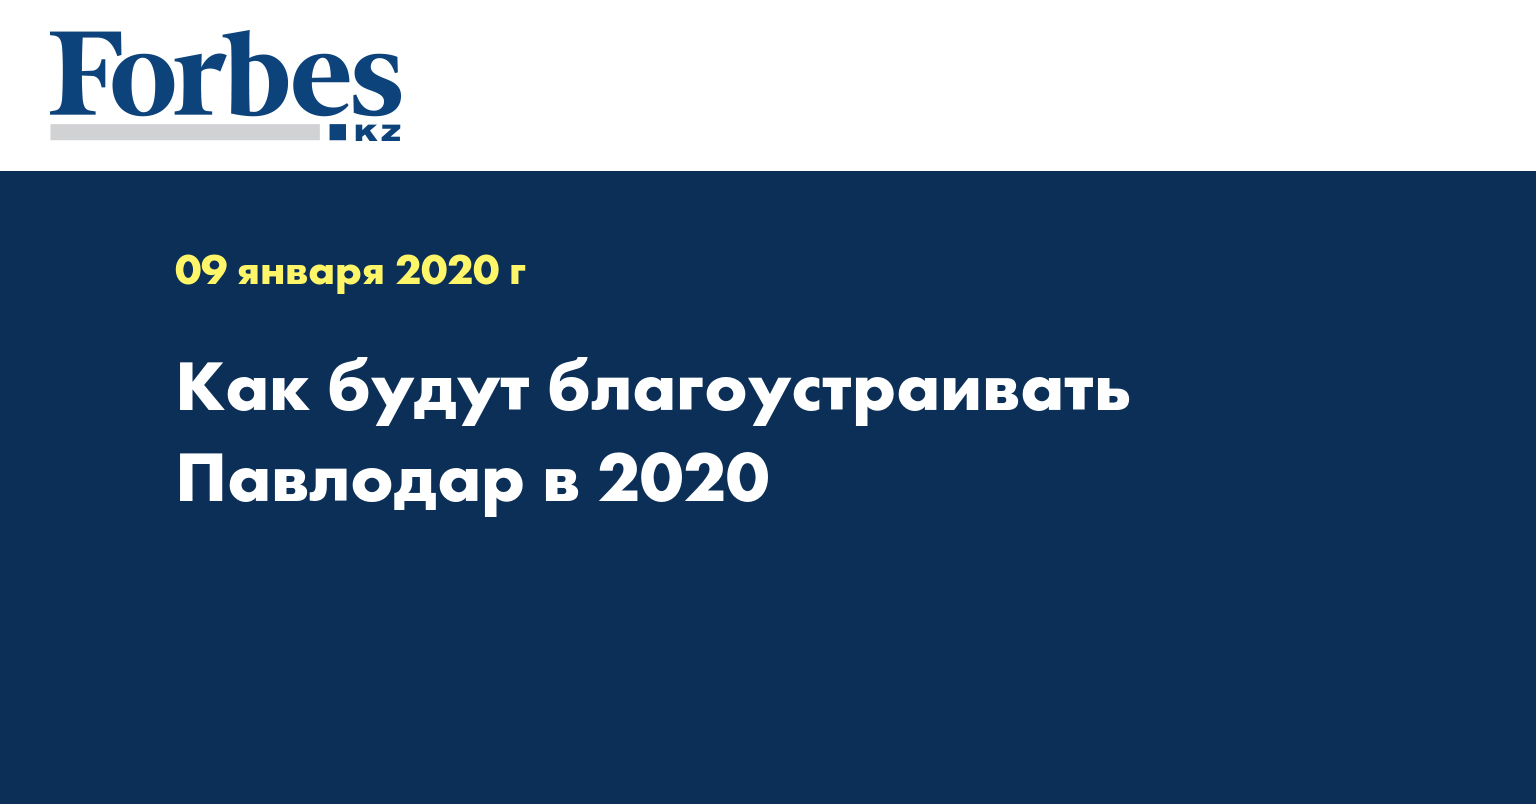 Как будут благоустраивать Павлодар в 2020